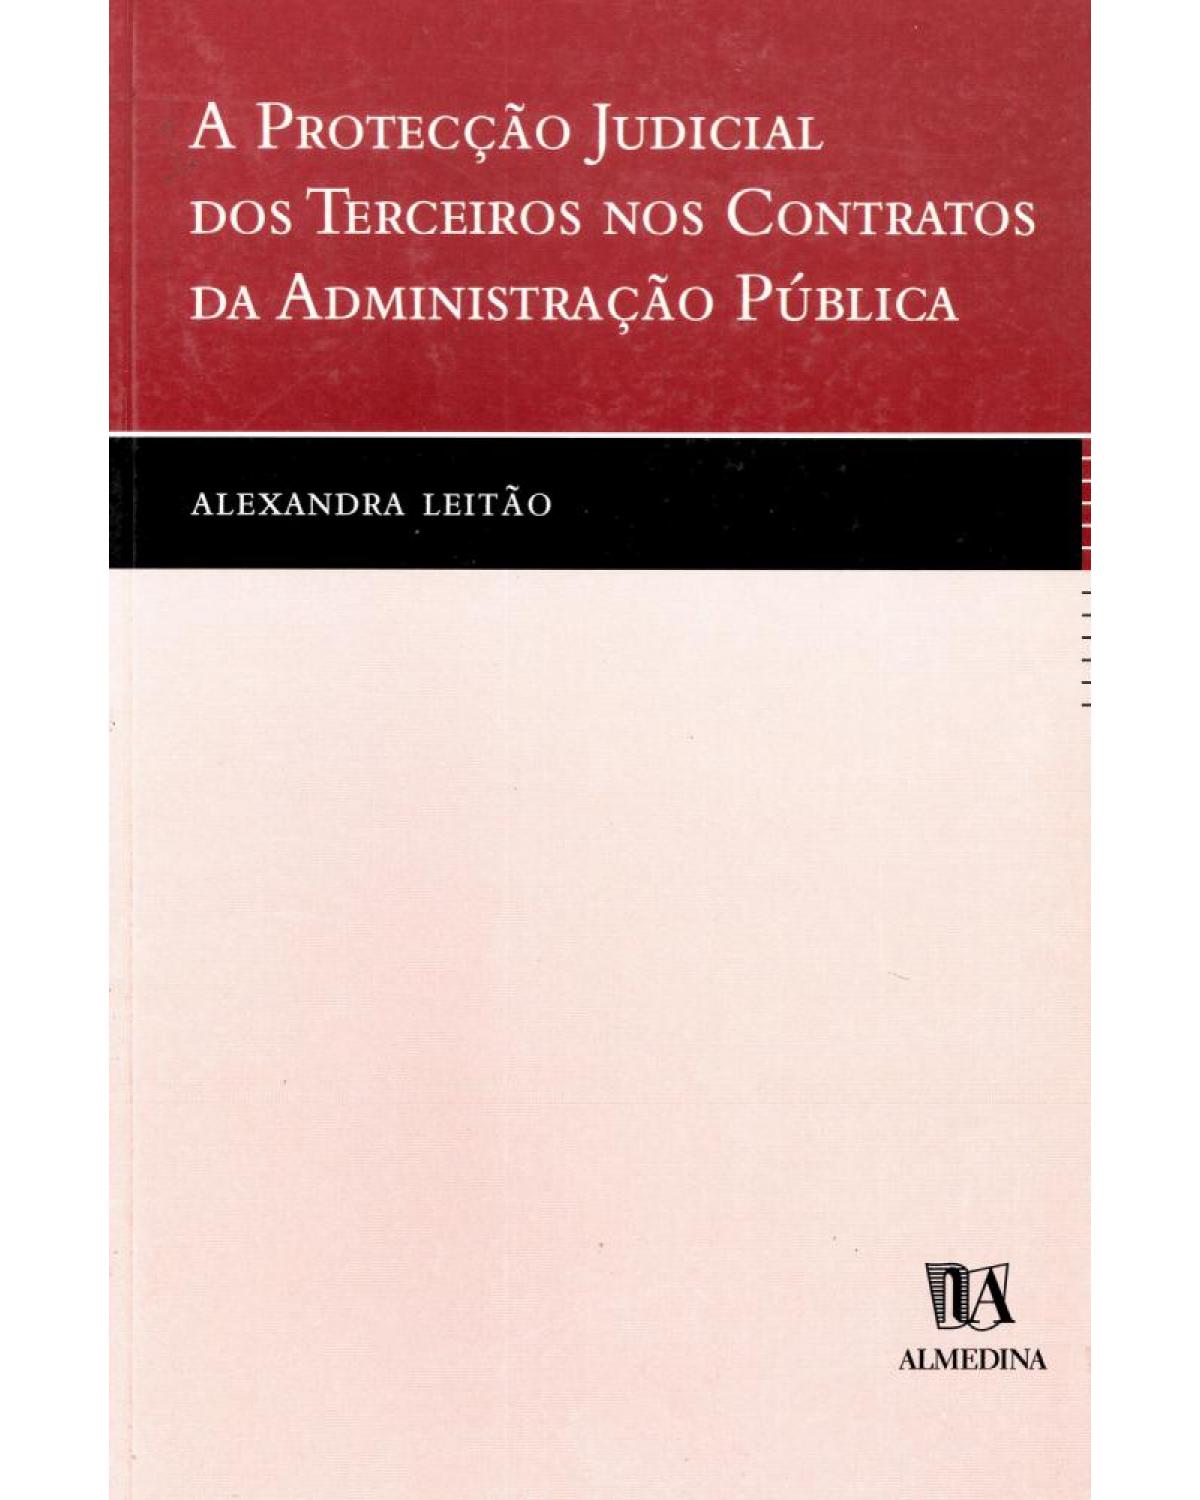 A protecção judicial dos terceiros nos contratos da administração pública - 1ª Edição | 2002